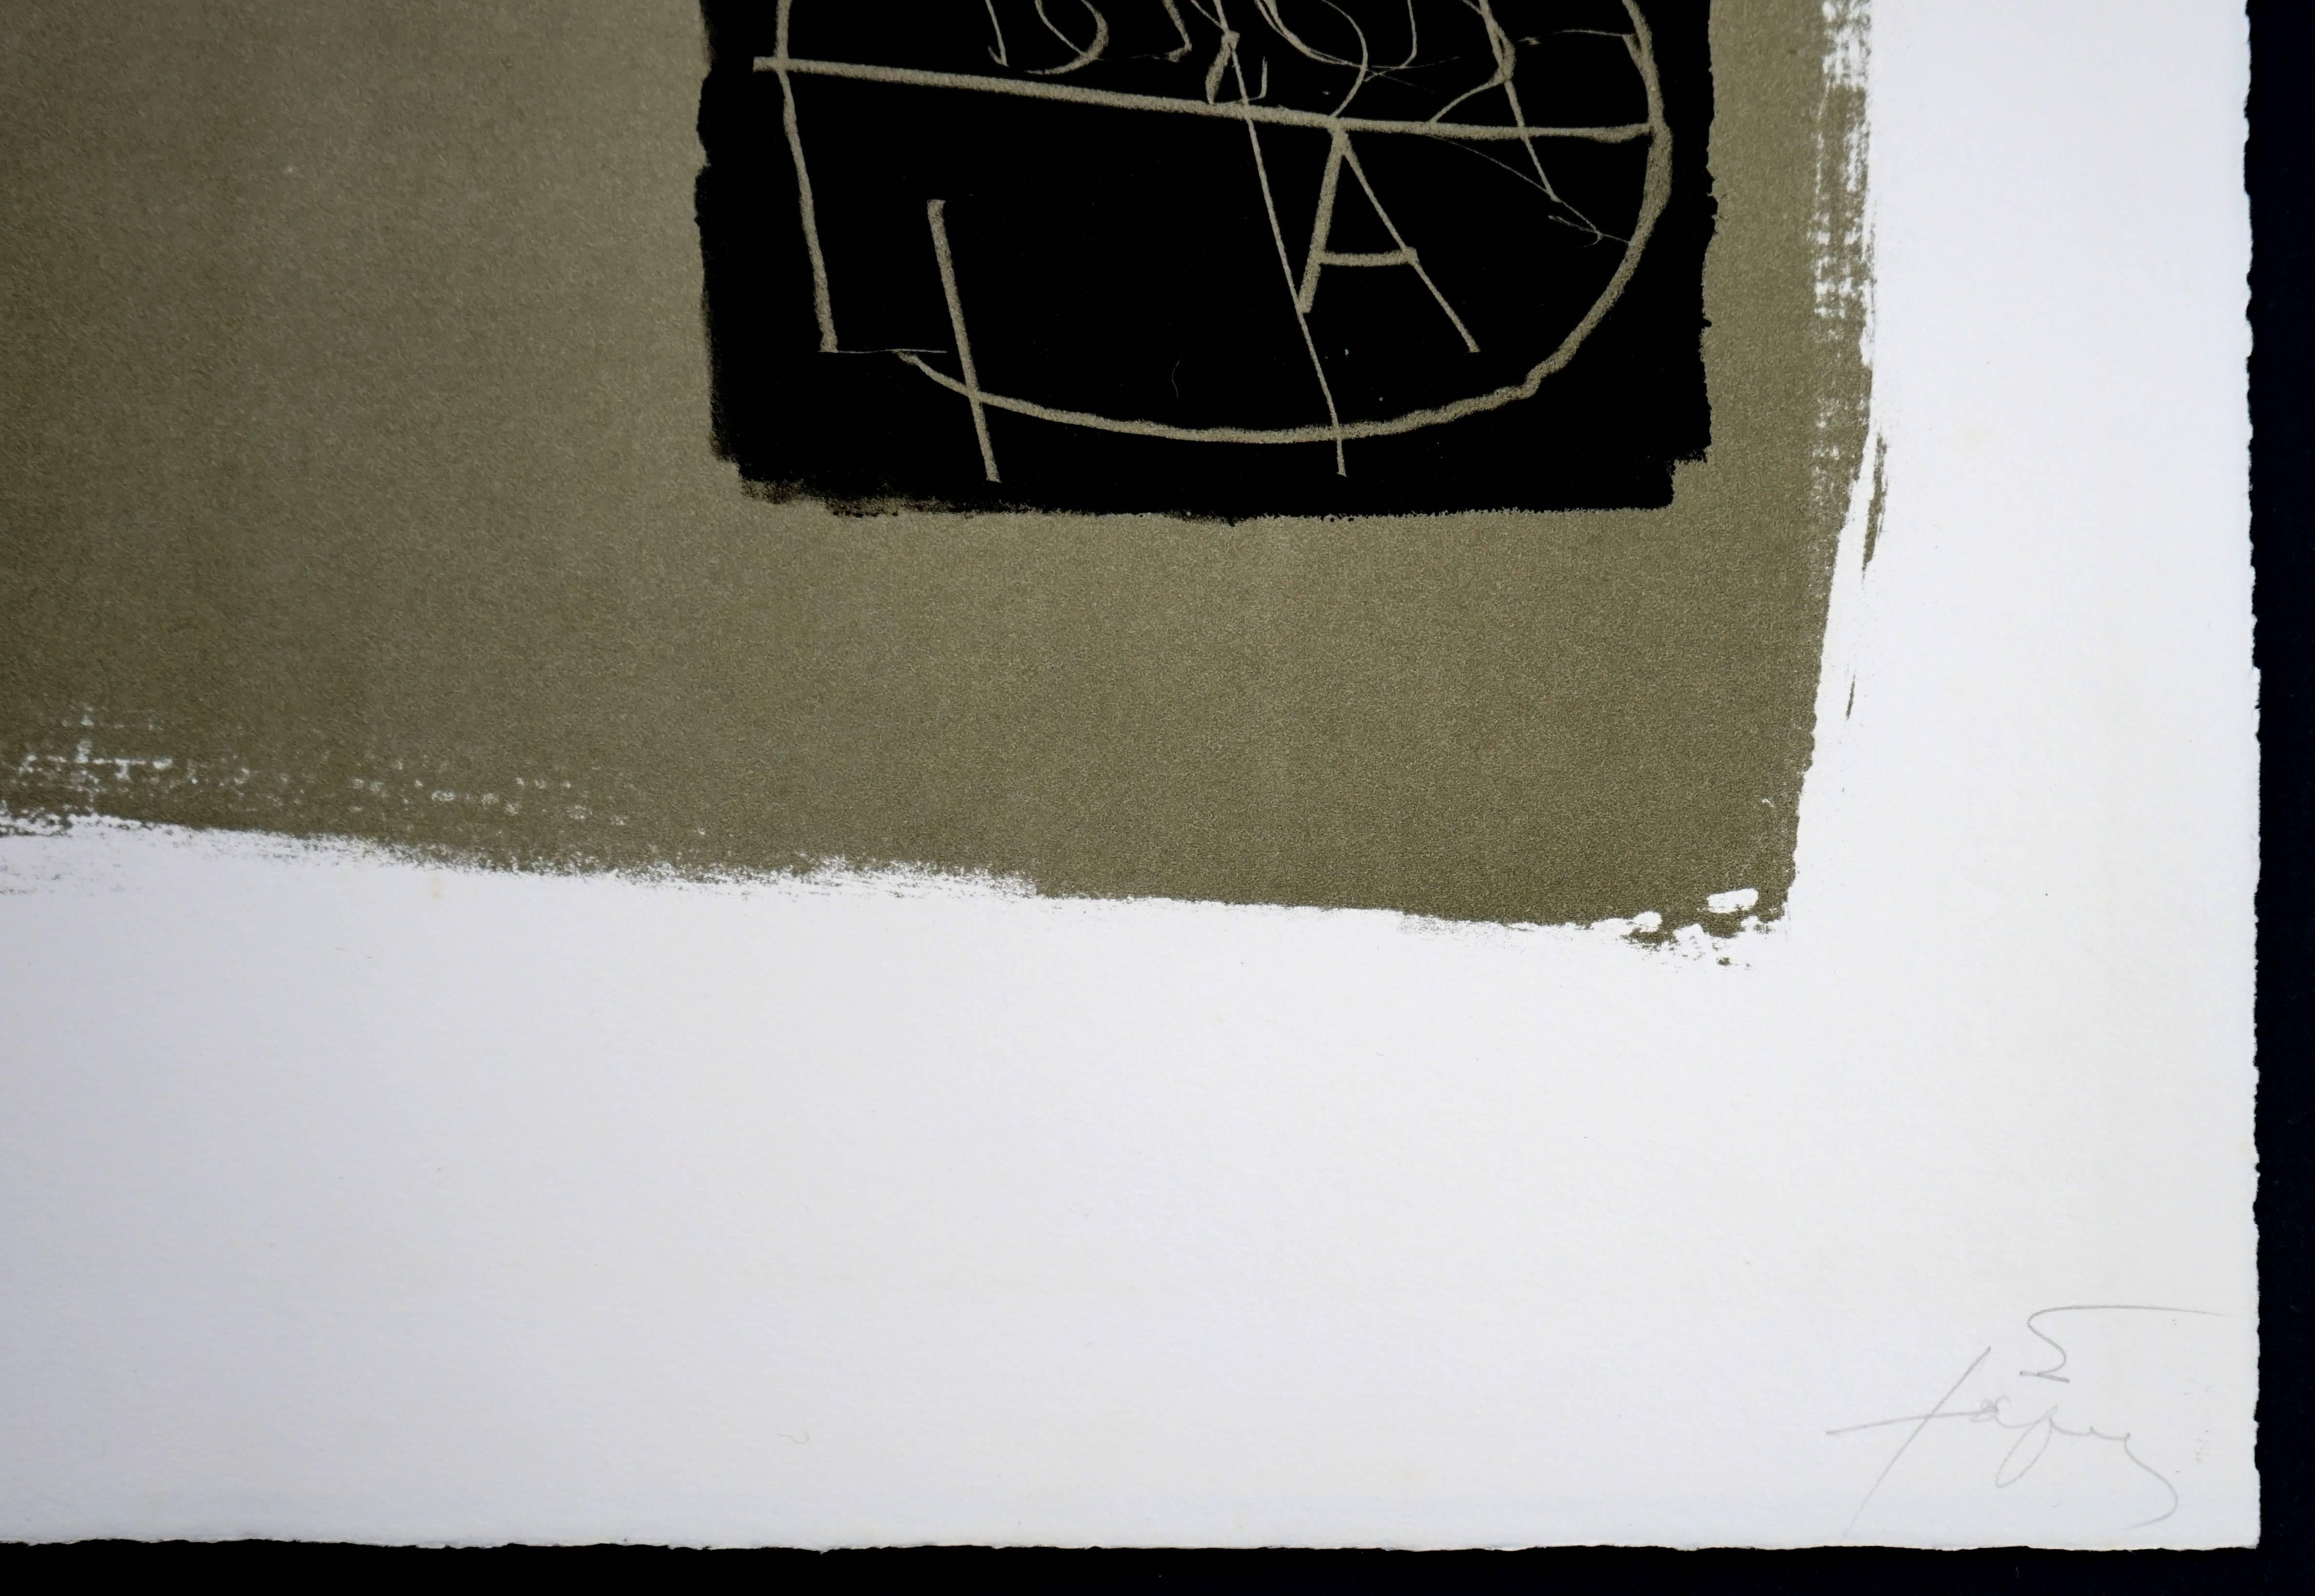 Artistics : Antoni Tapies
Titre : Art 6 '75
Année : 1975
Médium : Lithographie
Signée et numérotée 114/150 en bas à gauche avec le cachet de l'éditeur.
En parfait état. 
Dimensions : 35.25 x 25 in Dimensions encadrées : 43.25 x 34 x 1 pouces